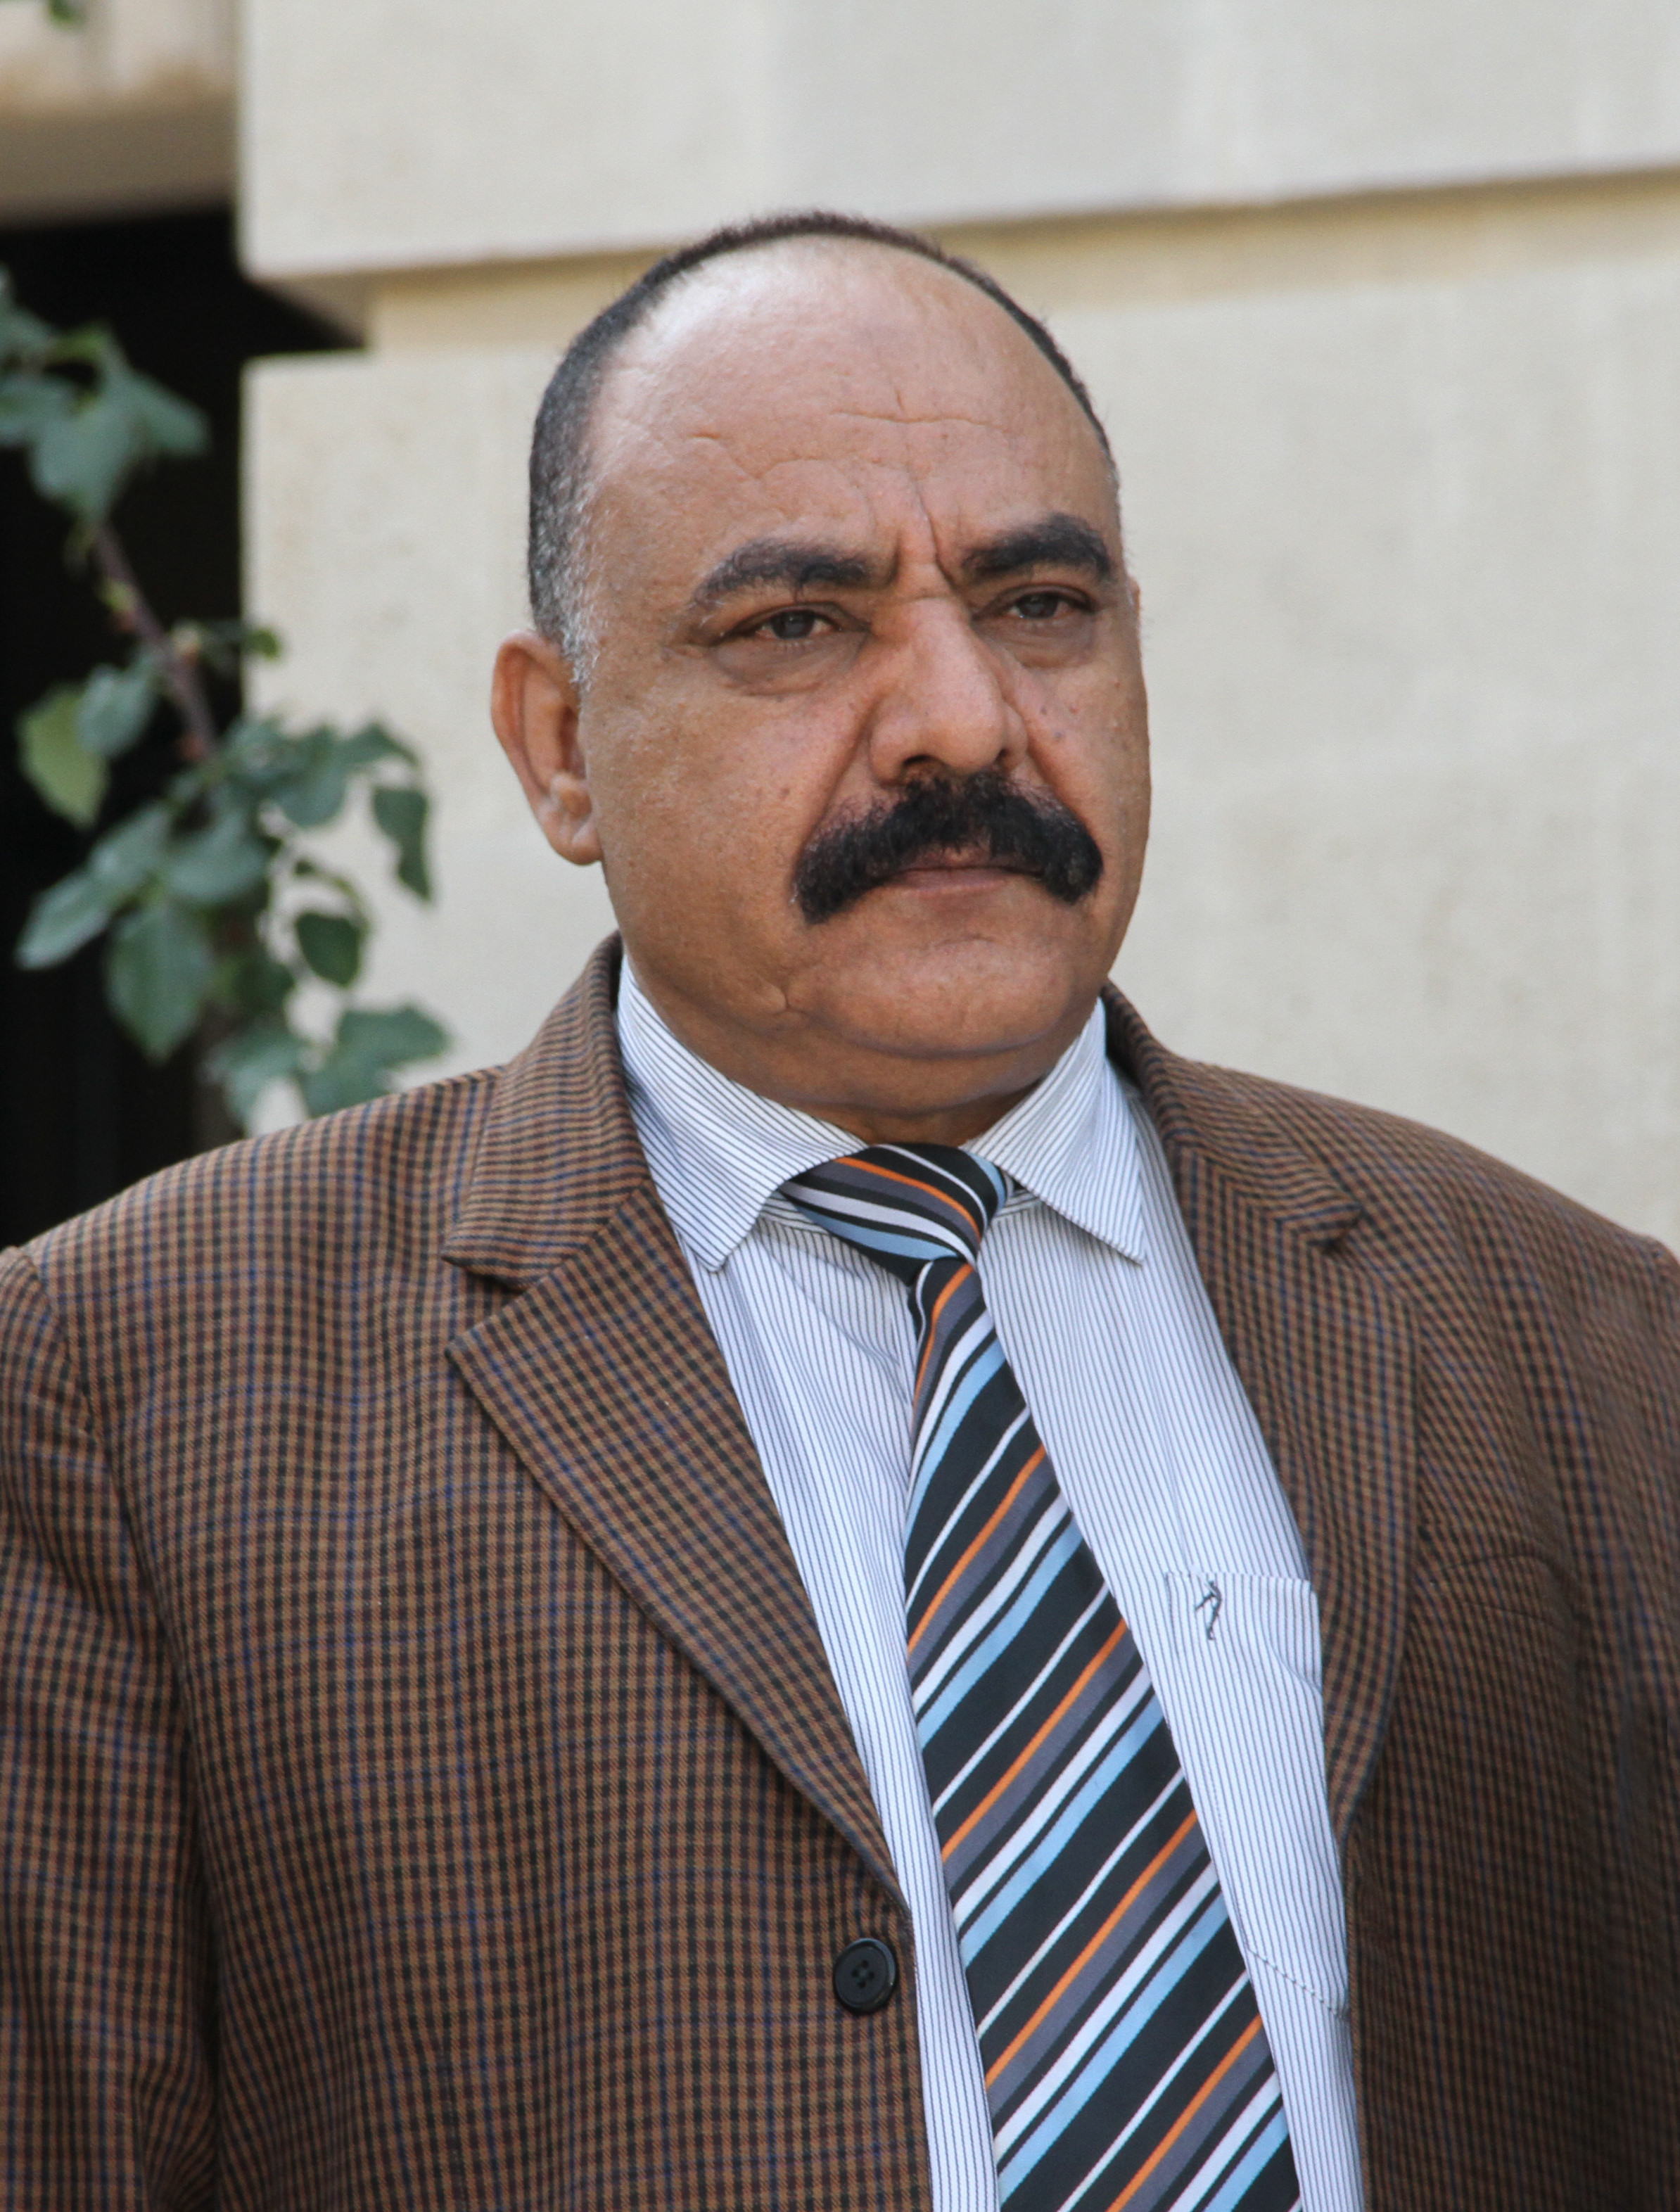 Staatsminister Al-Bokir spricht Präsident Al-Mashat sein Beileid zum Tod seines Bruders aus